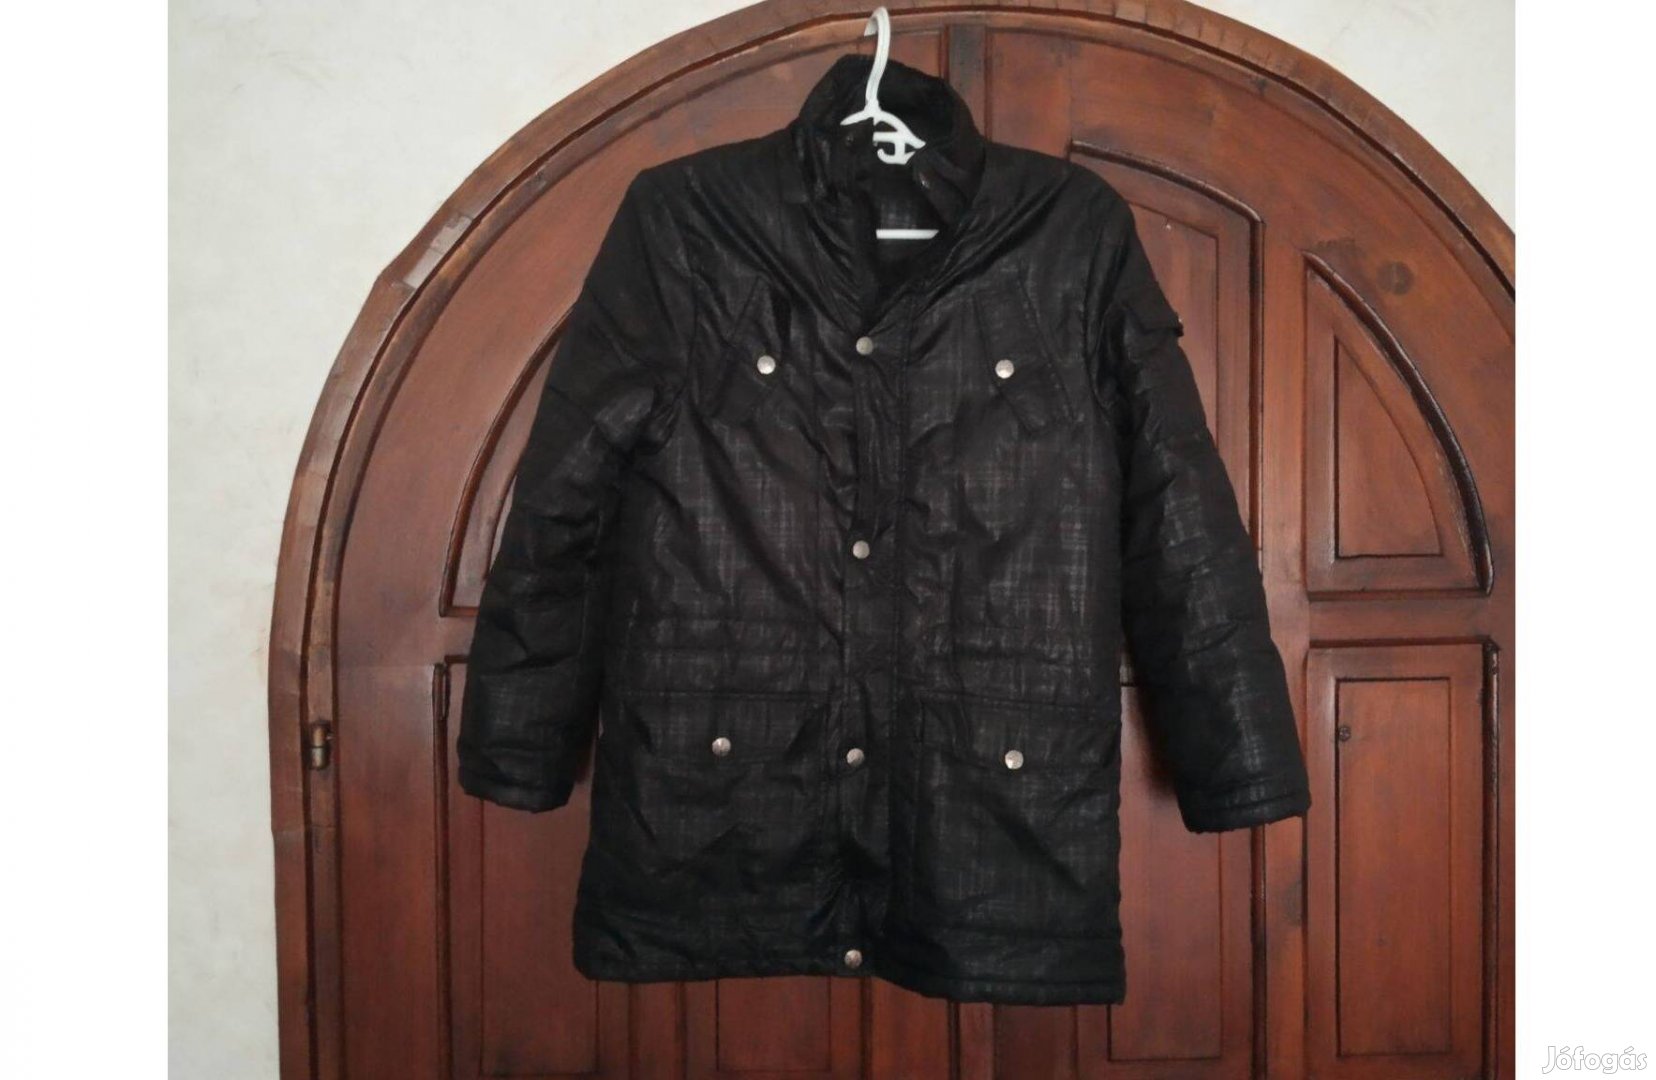 Fekete színű női dzseki "S" méret, Okay 164 márka, tavaszra,őszre